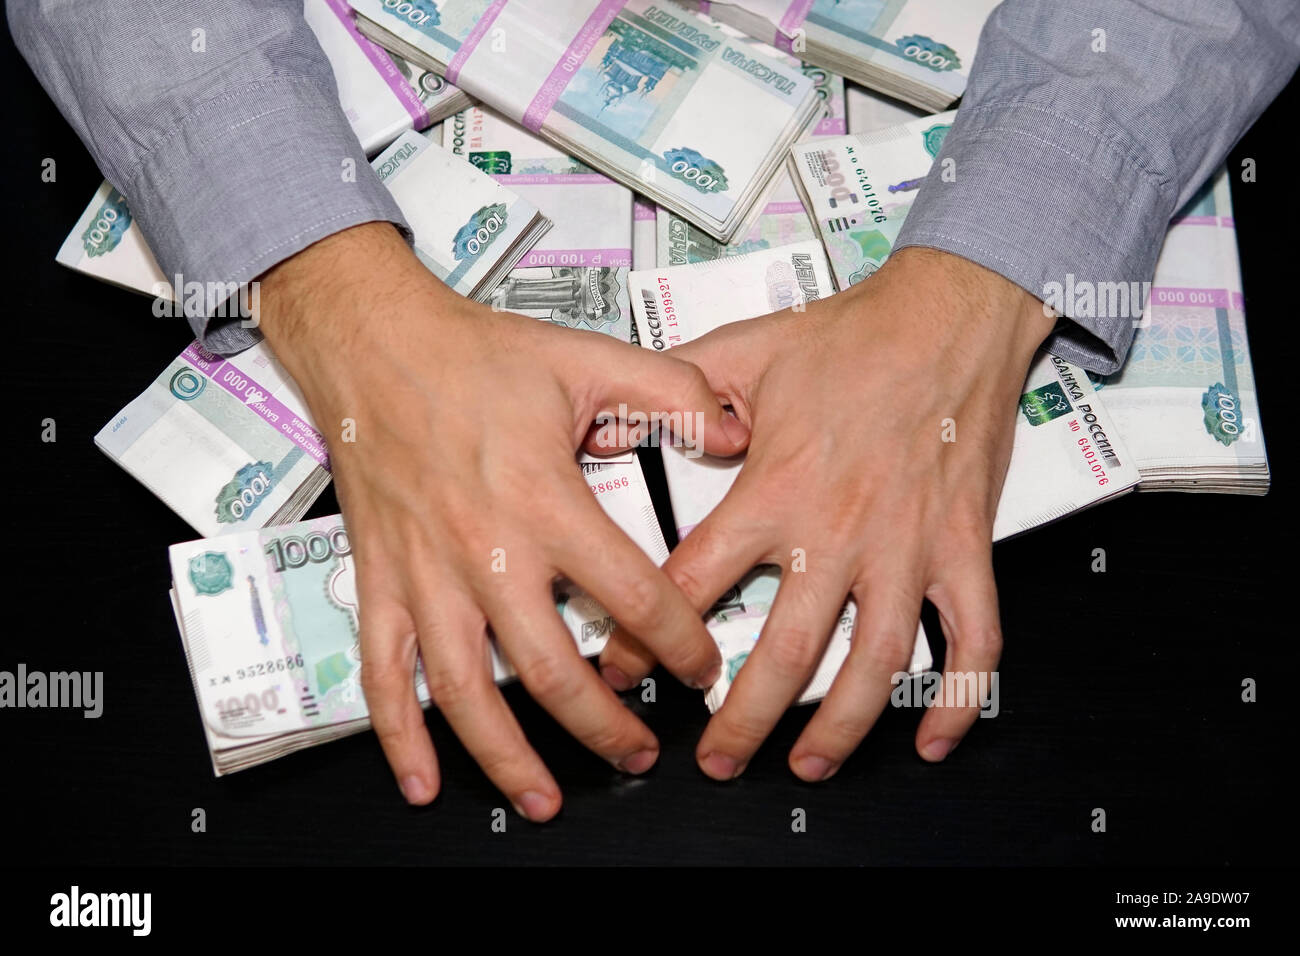 Les mains des hommes pour atteindre une liasse d'argent. Un million de roubles sur le tableau noir. Le concept de la richesse, le succès, la cupidité et la corruption, la soif de l'argent Banque D'Images